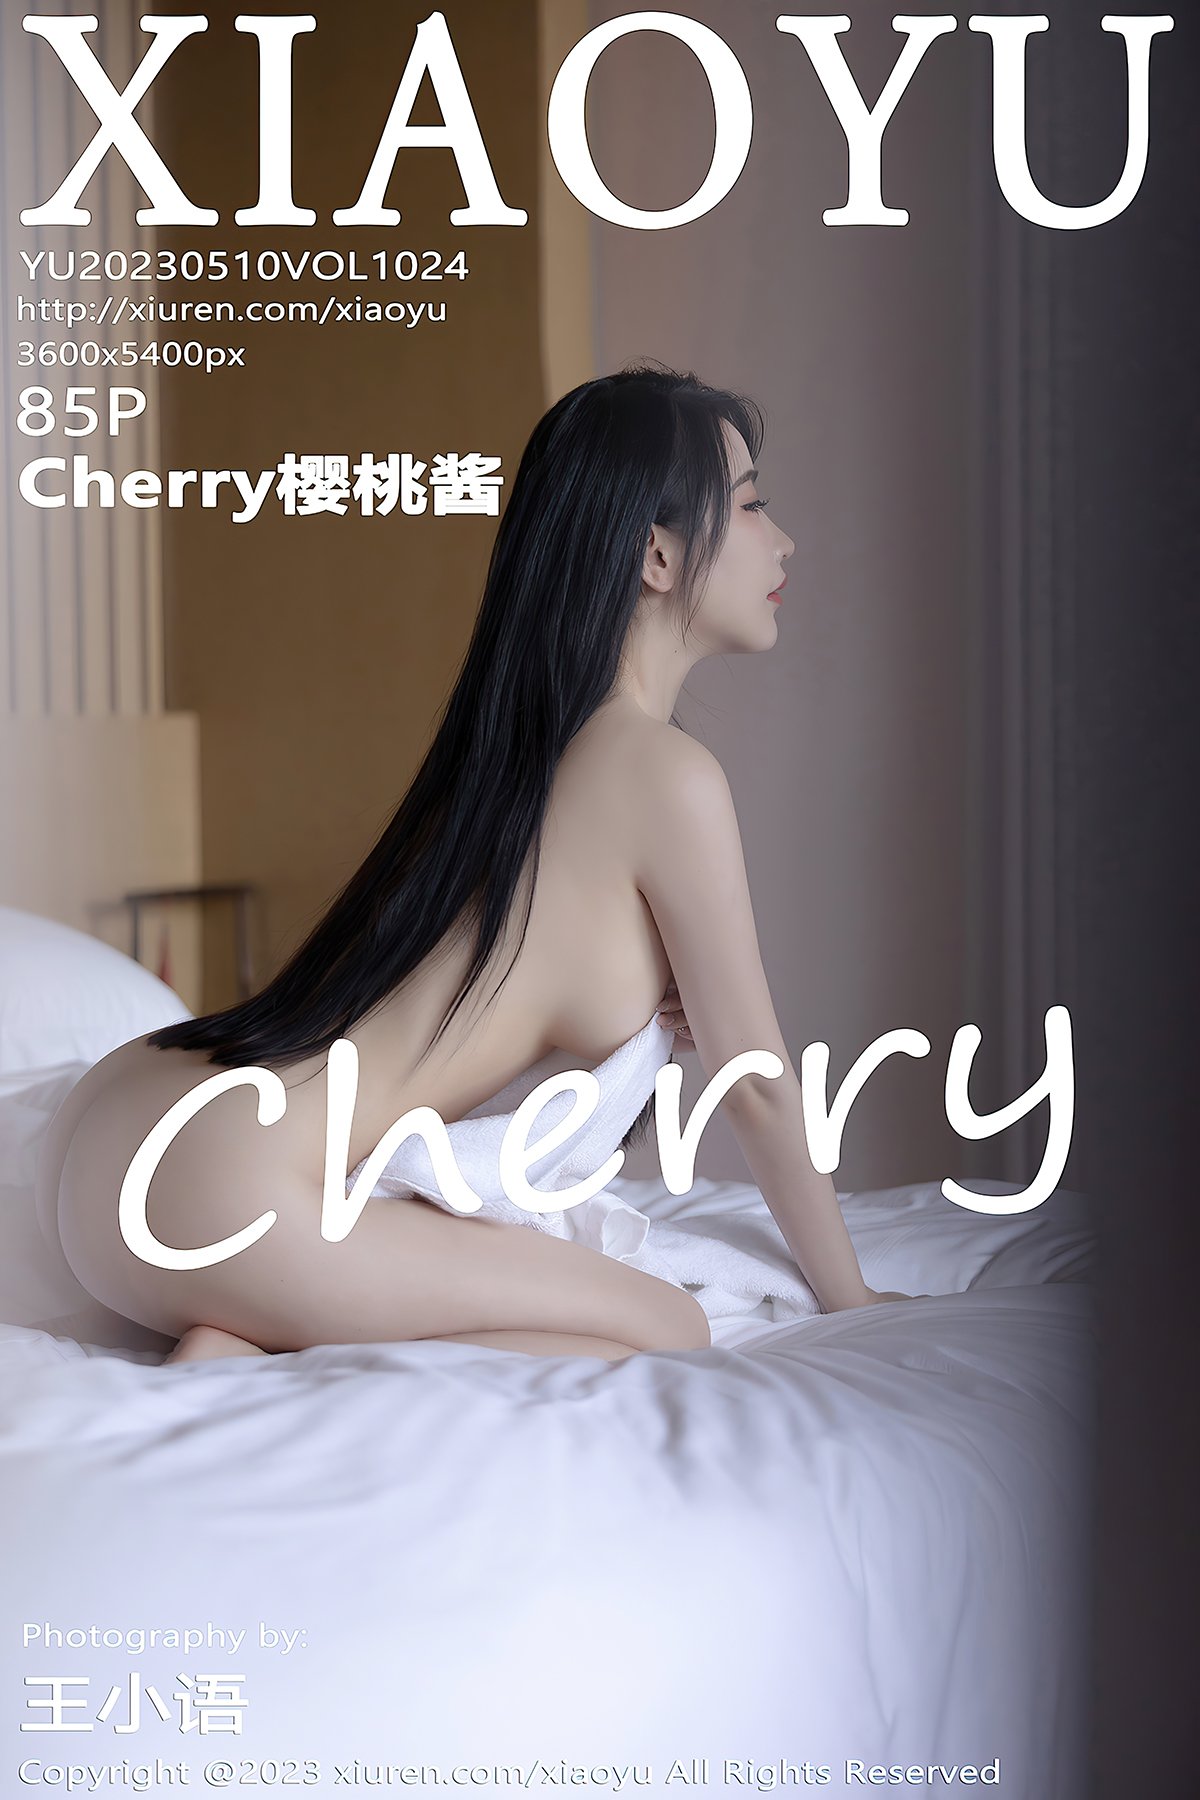 XiaoYu语画界 Vol.1024 Cherry Ying Tao Jiang